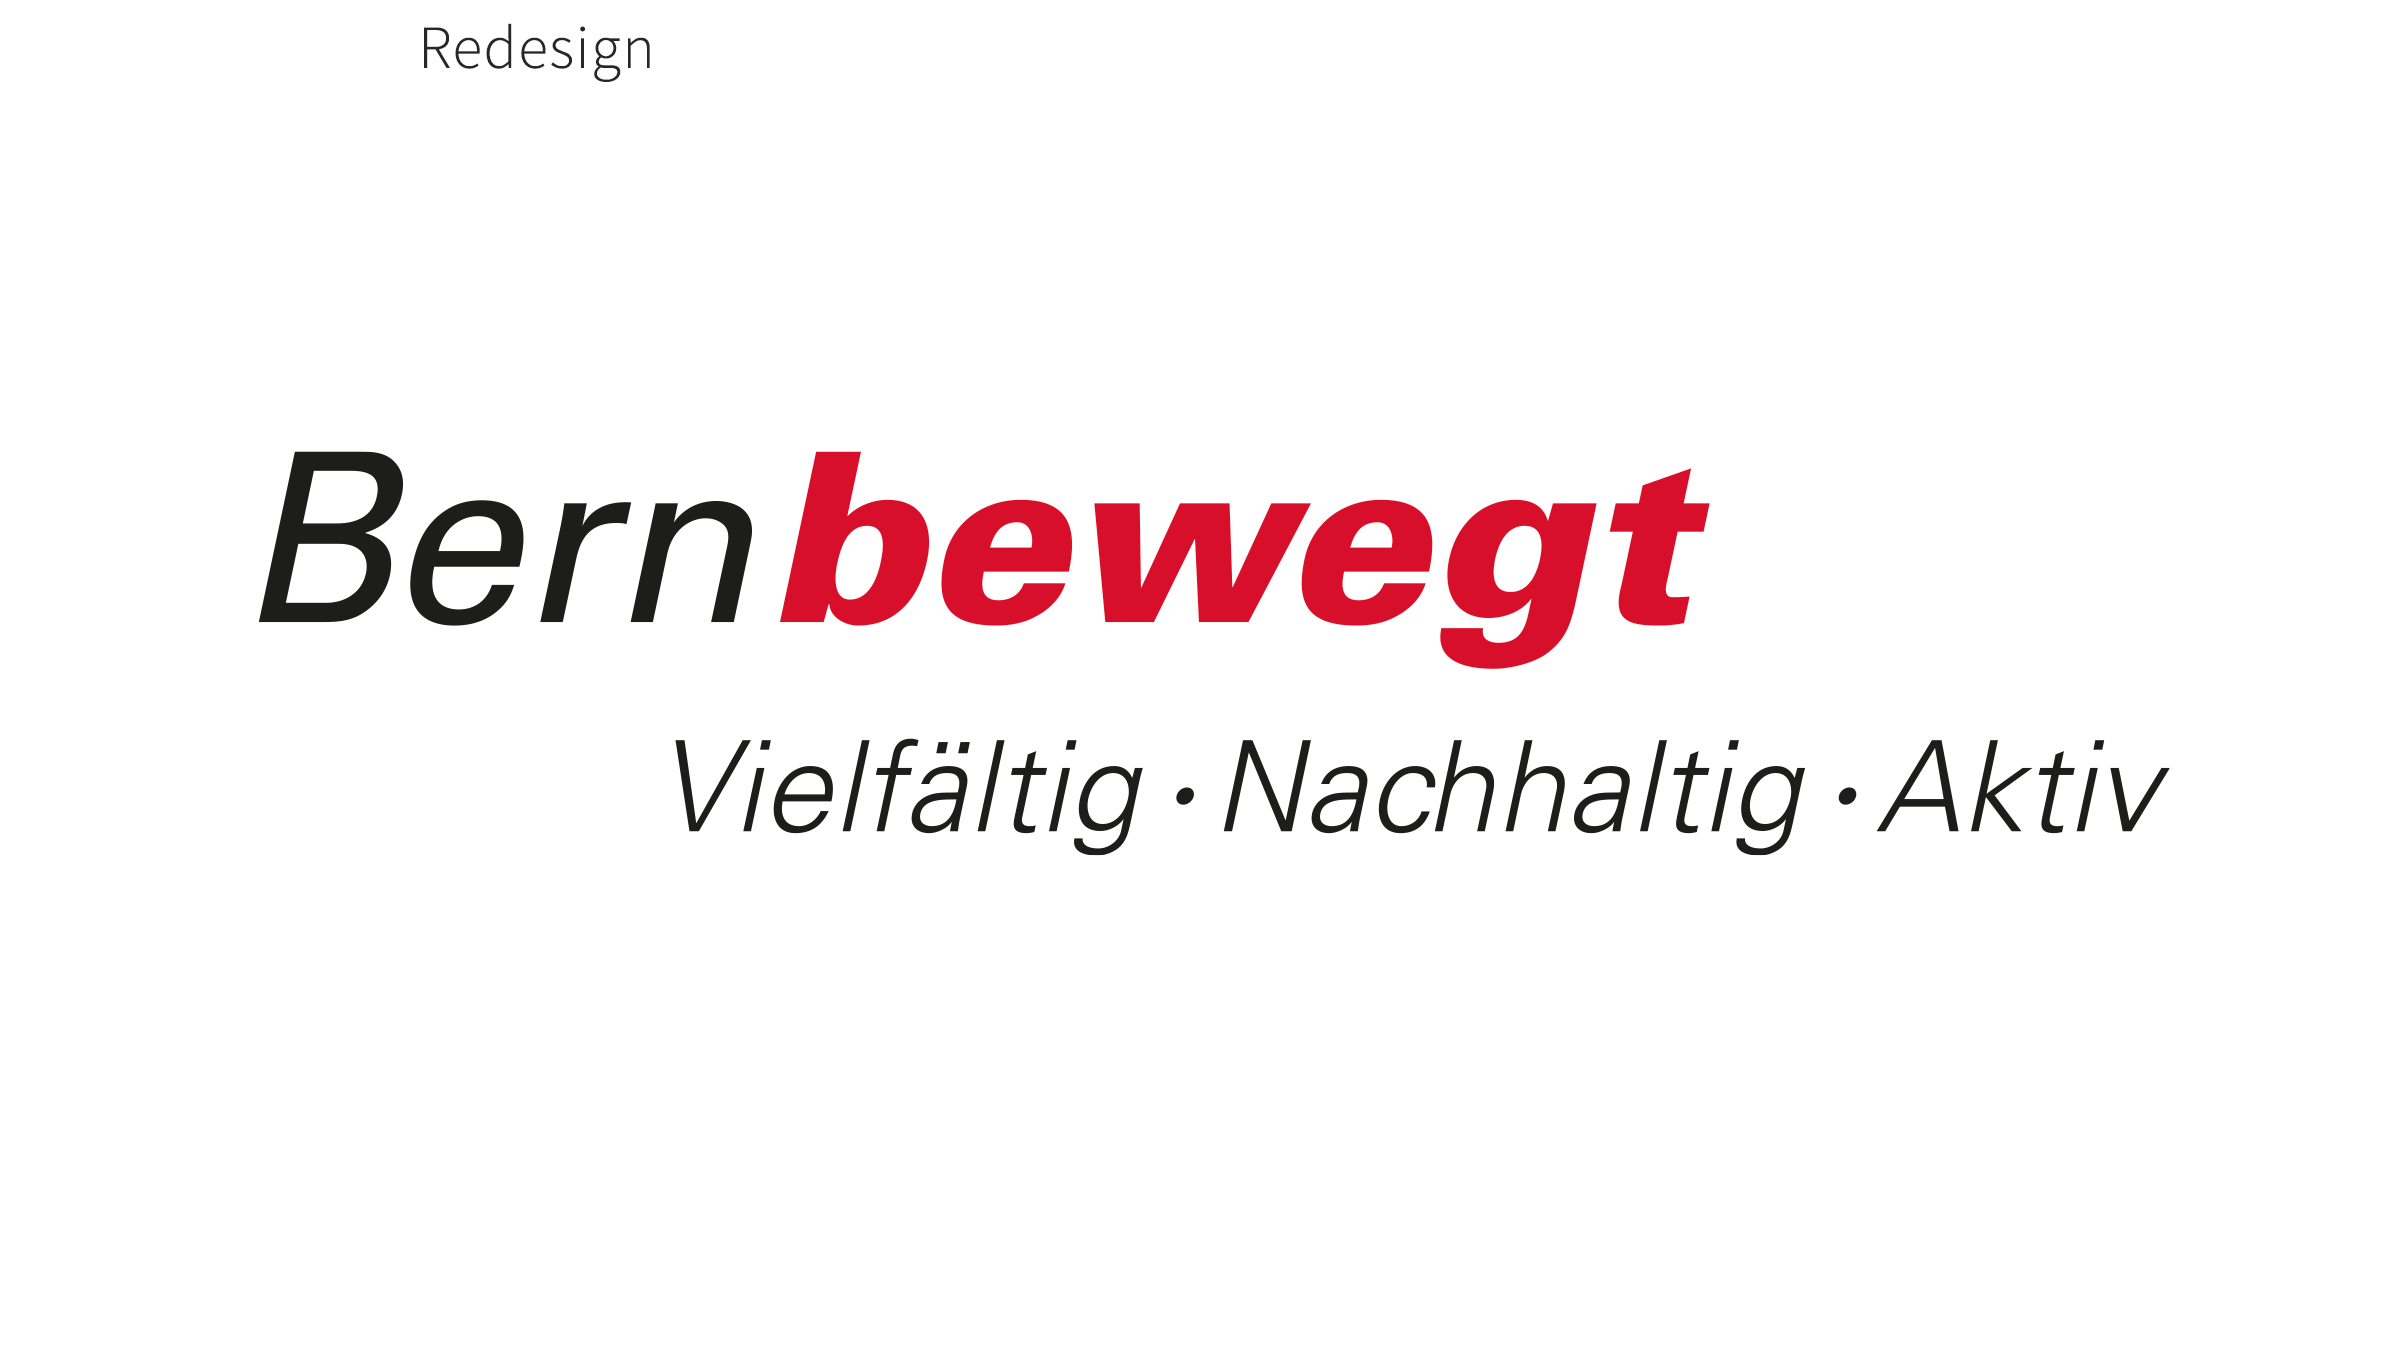 Logo Bernbewegt Redesign